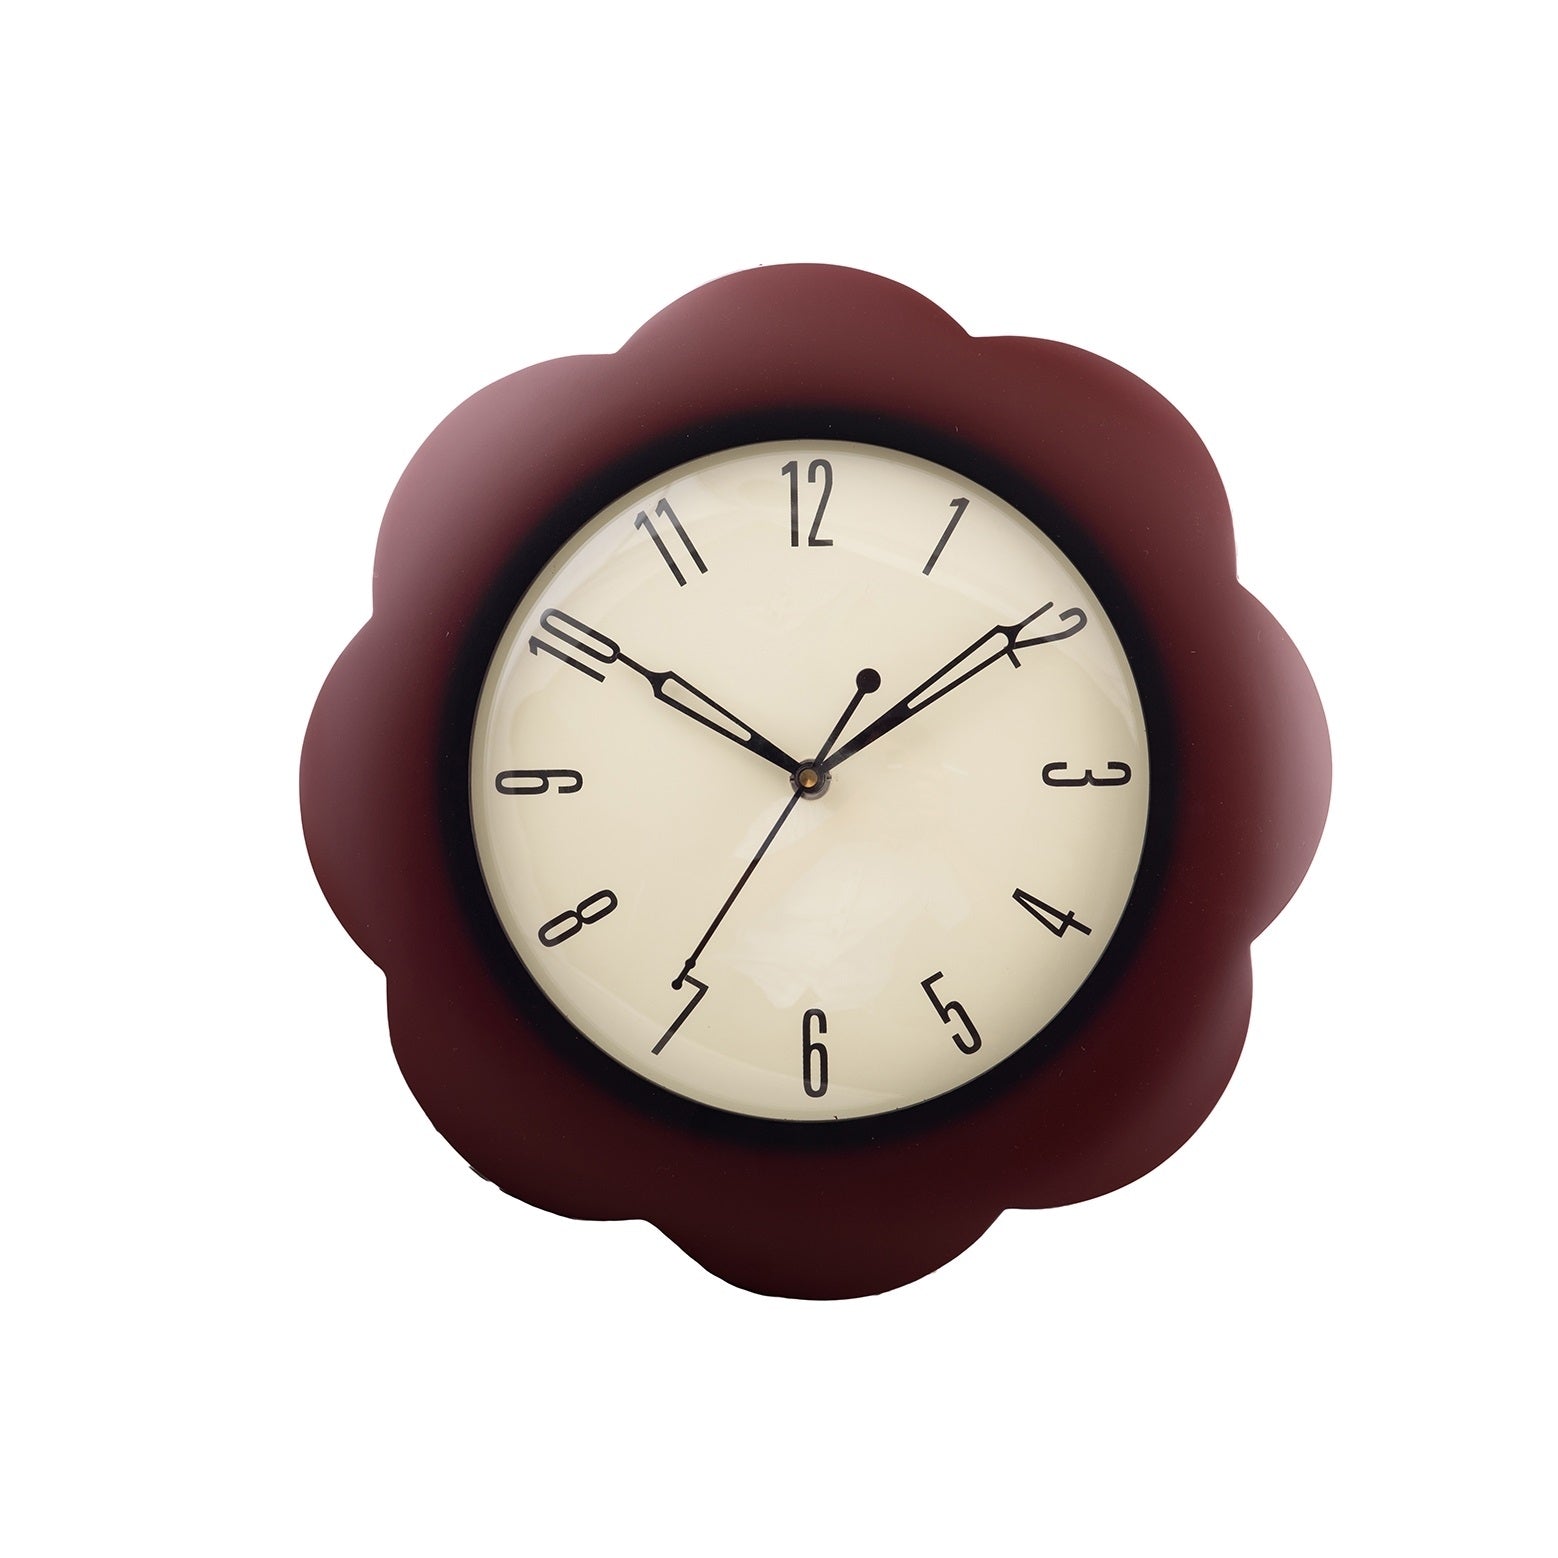 Premium Decorative Analog Round Shape Flower Design Wooden Wall Clock